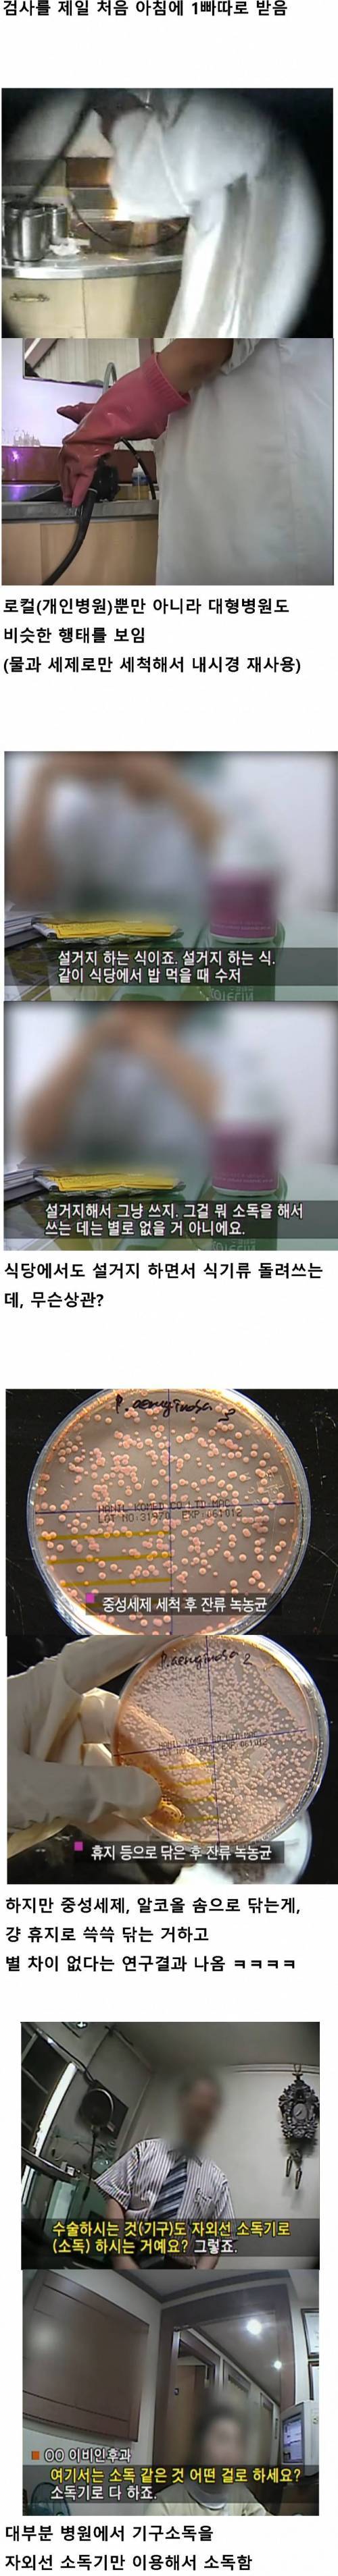 2000년대 중반 한국 병원 위생 상태